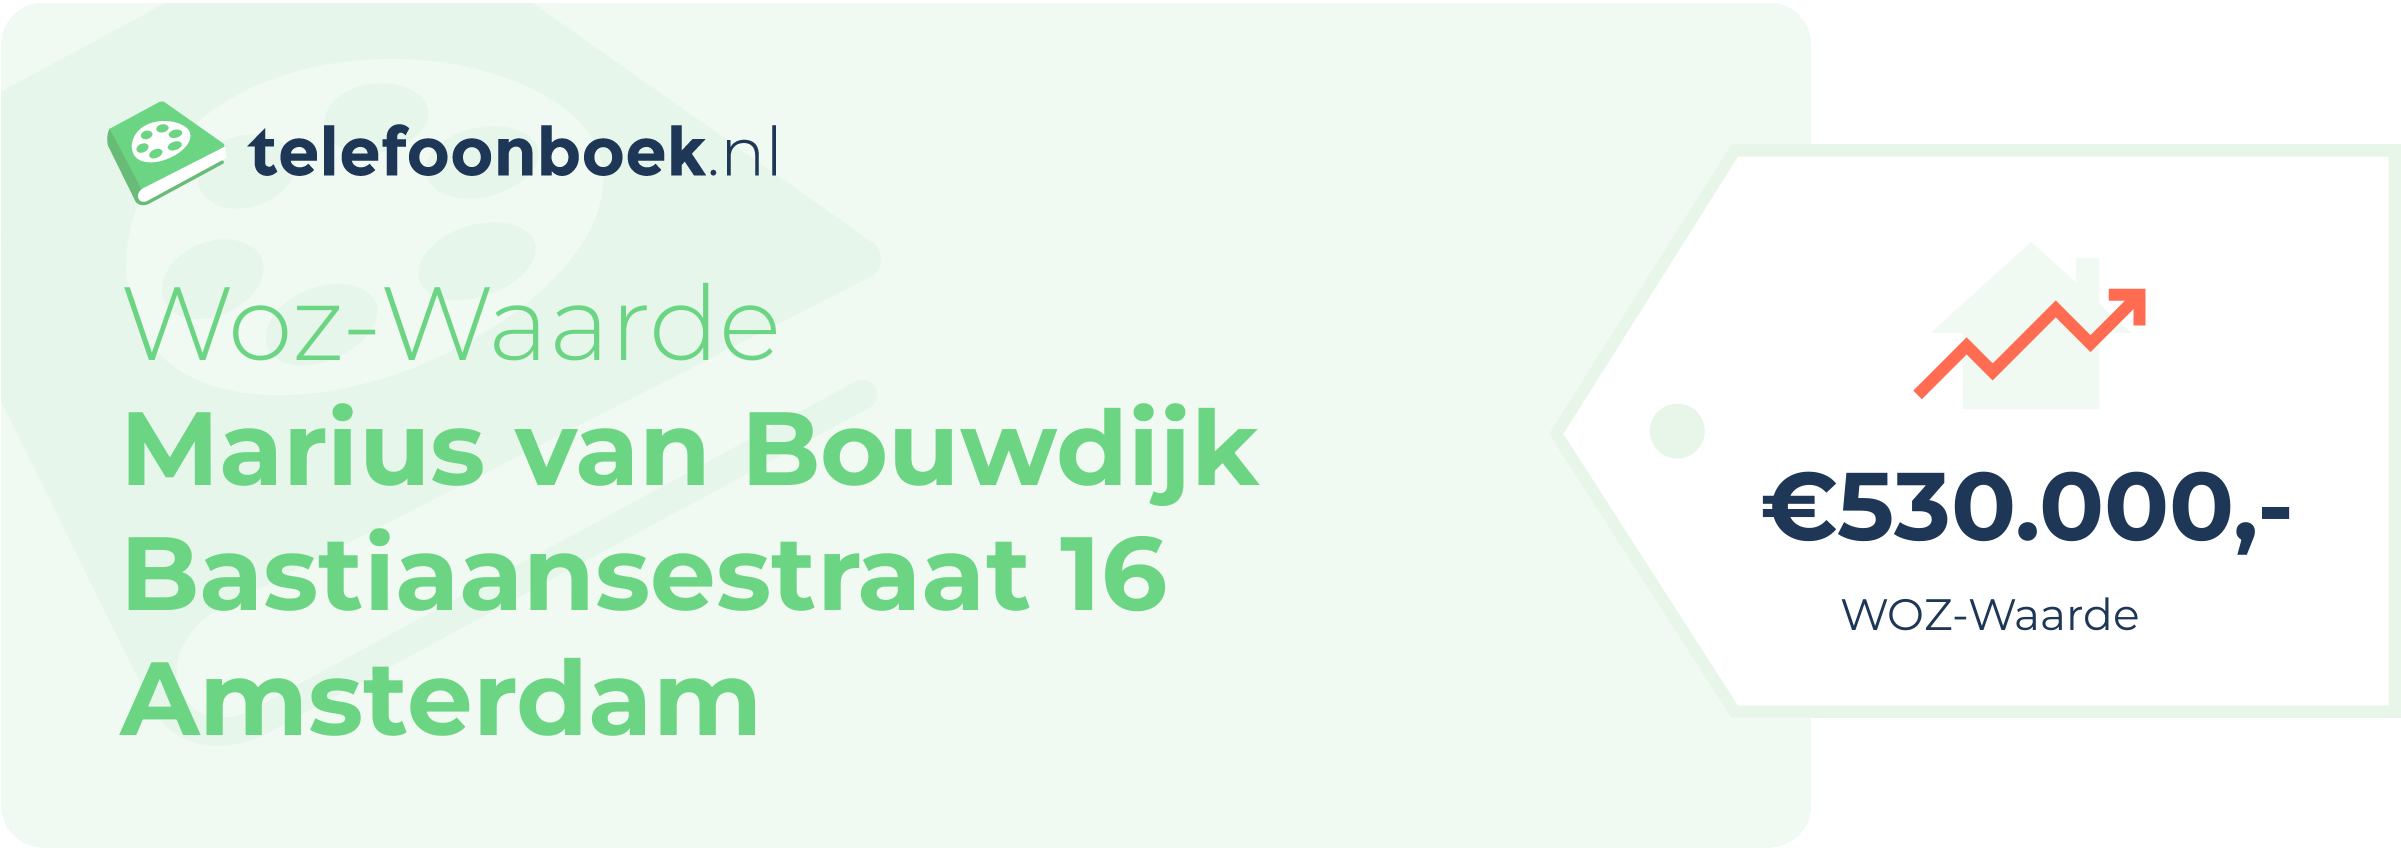 WOZ-waarde Marius Van Bouwdijk Bastiaansestraat 16 Amsterdam